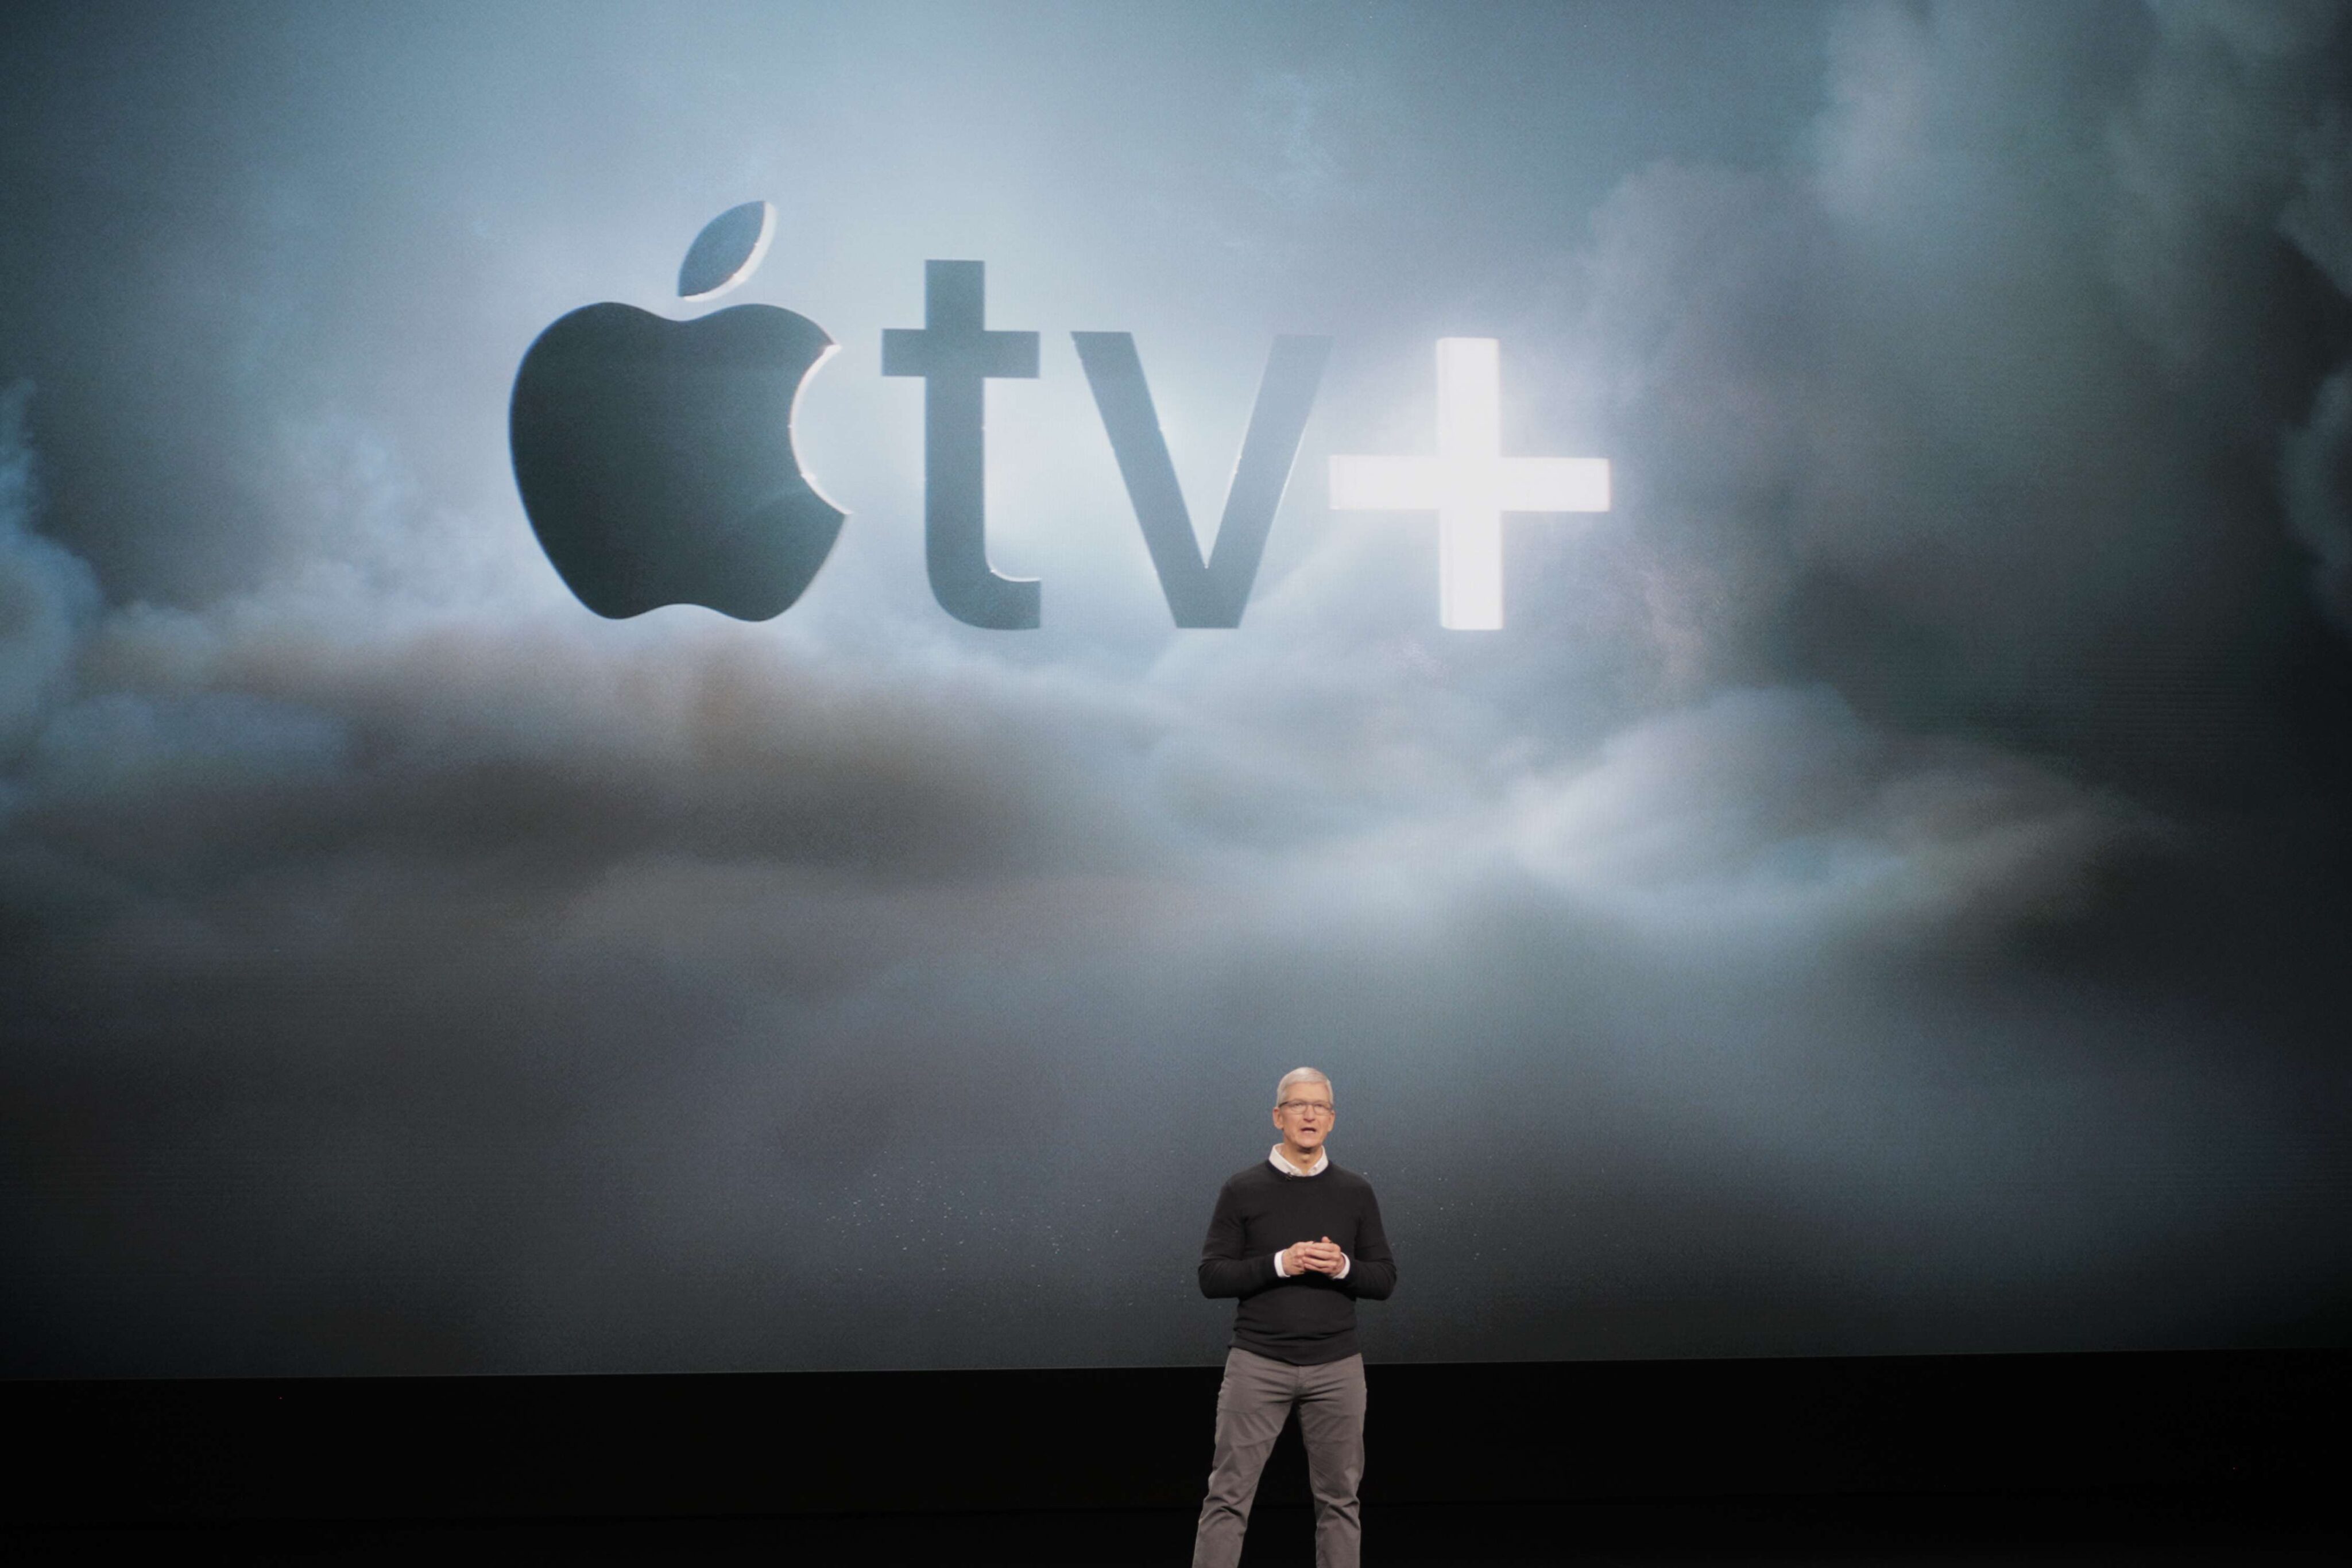 Globoplay oferece 6 meses de Apple TV+ grátis para assinantes - MacMagazine